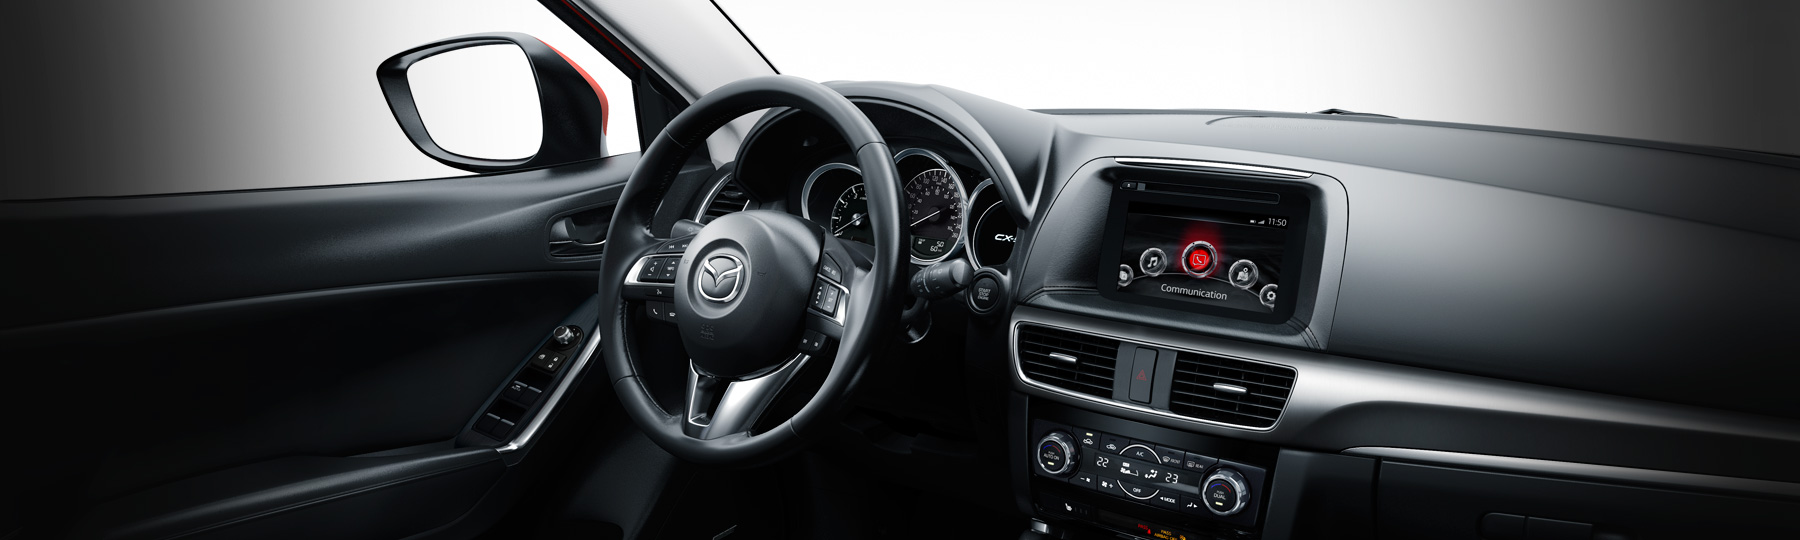 2016 Mazda CX-5 GS Interior Dashboard